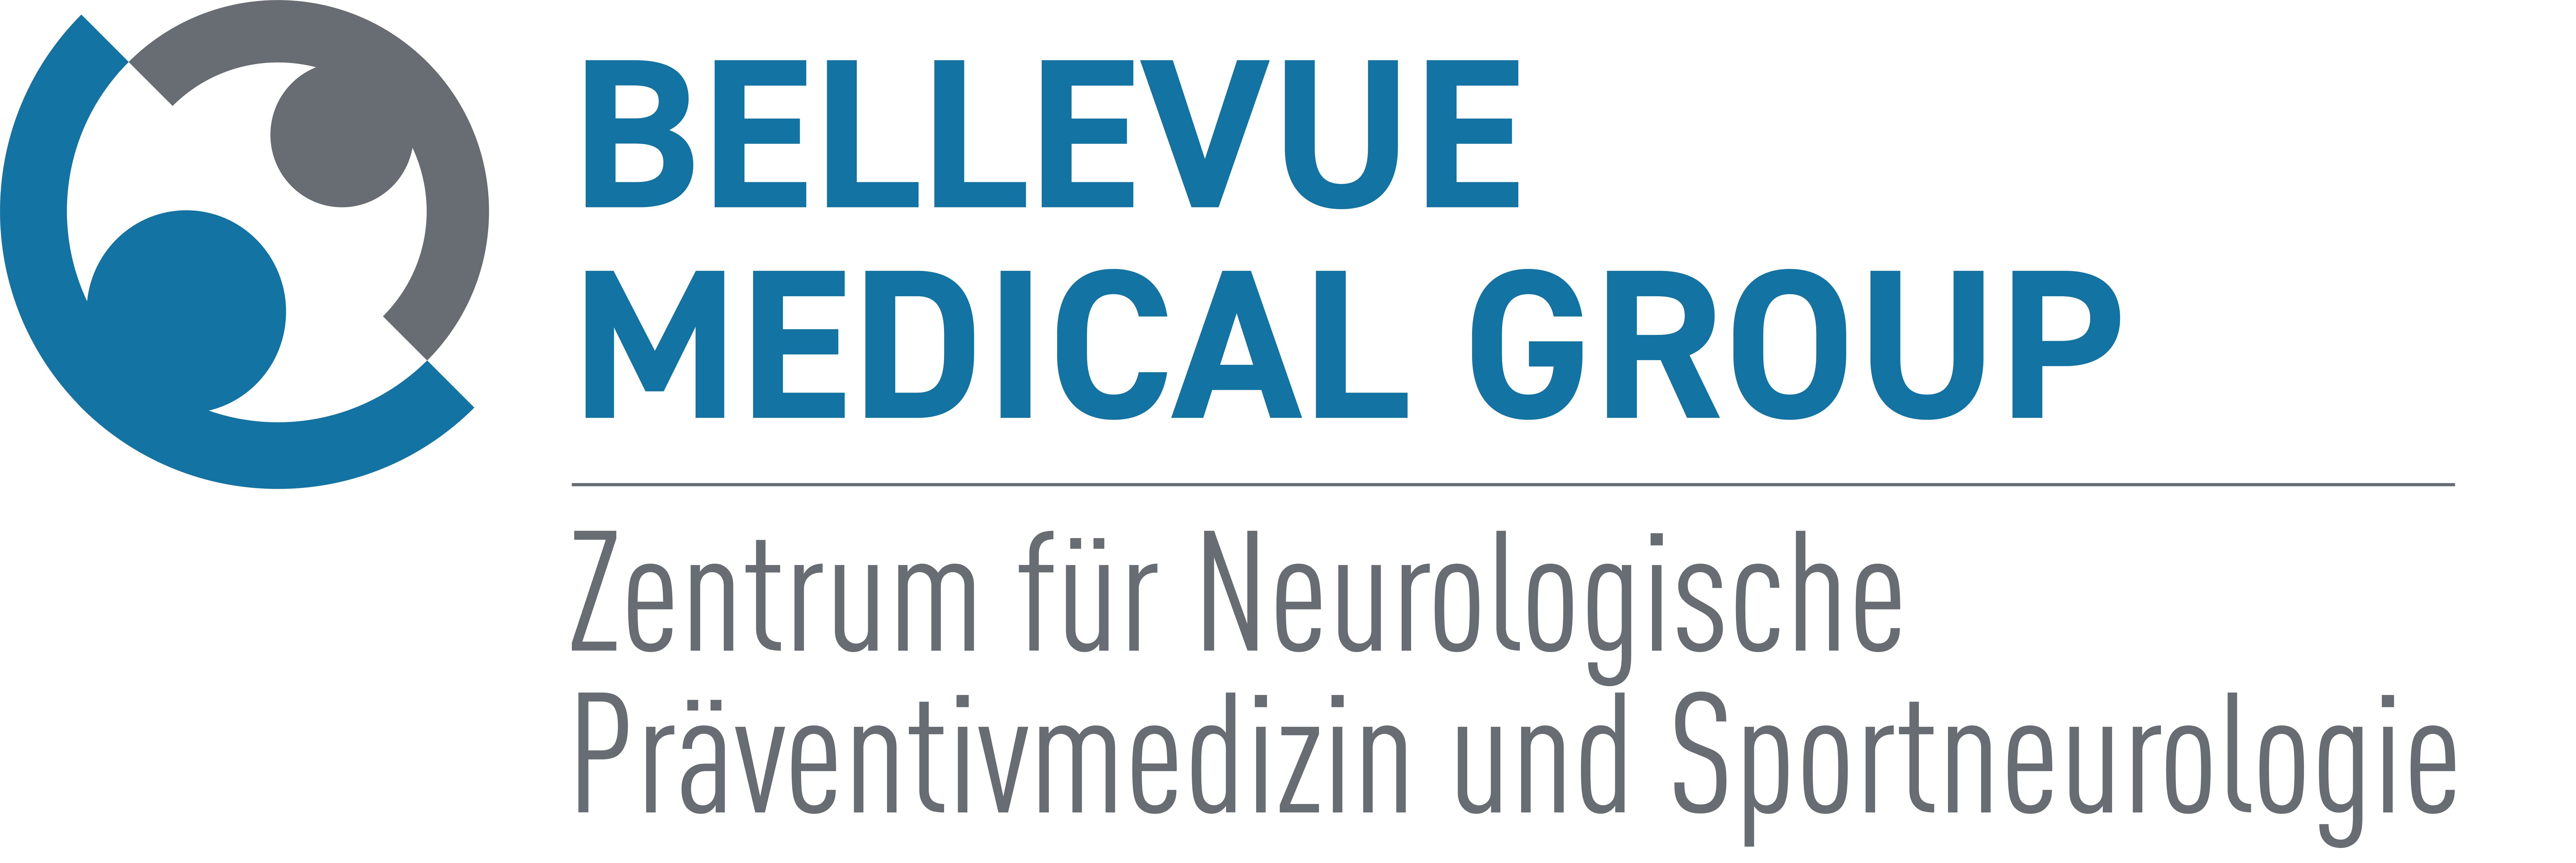 Zentrum für neurologische Präventivmedizin und Sportneurologie